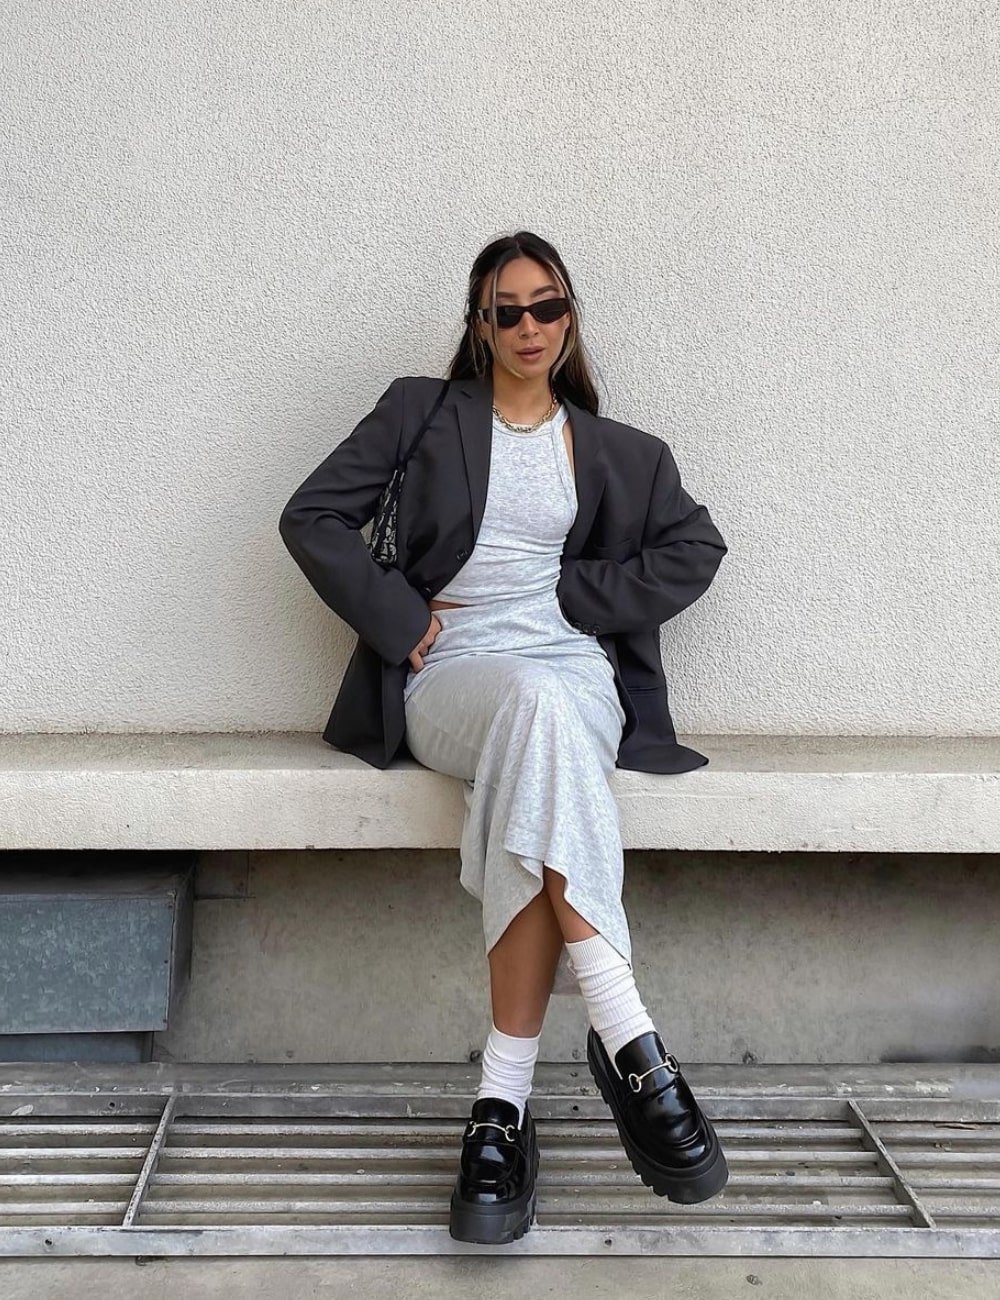 Kristy Wu - vestido mido off white, blazer cinza, mocassim e óculos escuros - looks com mocassim - Outono - sentada em um banco - https://stealthelook.com.br